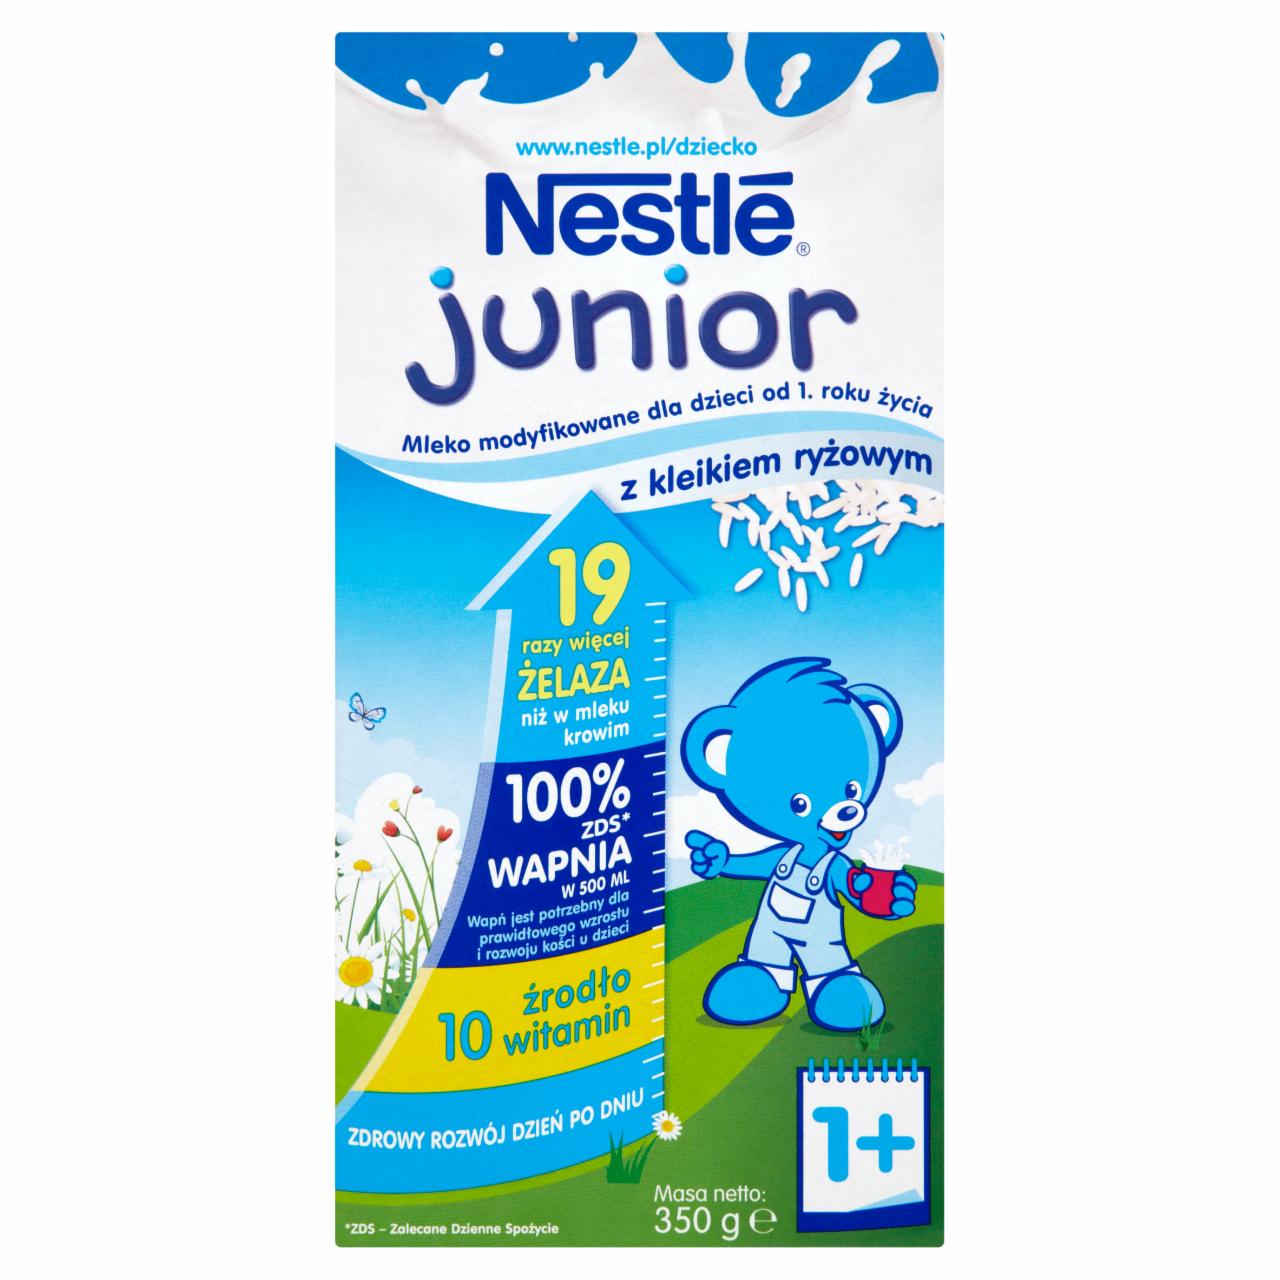 Zdjęcia - Nestlé Junior Mleko modyfikowane z kleikiem ryżowym dla dzieci od 1. roku życia 350 g